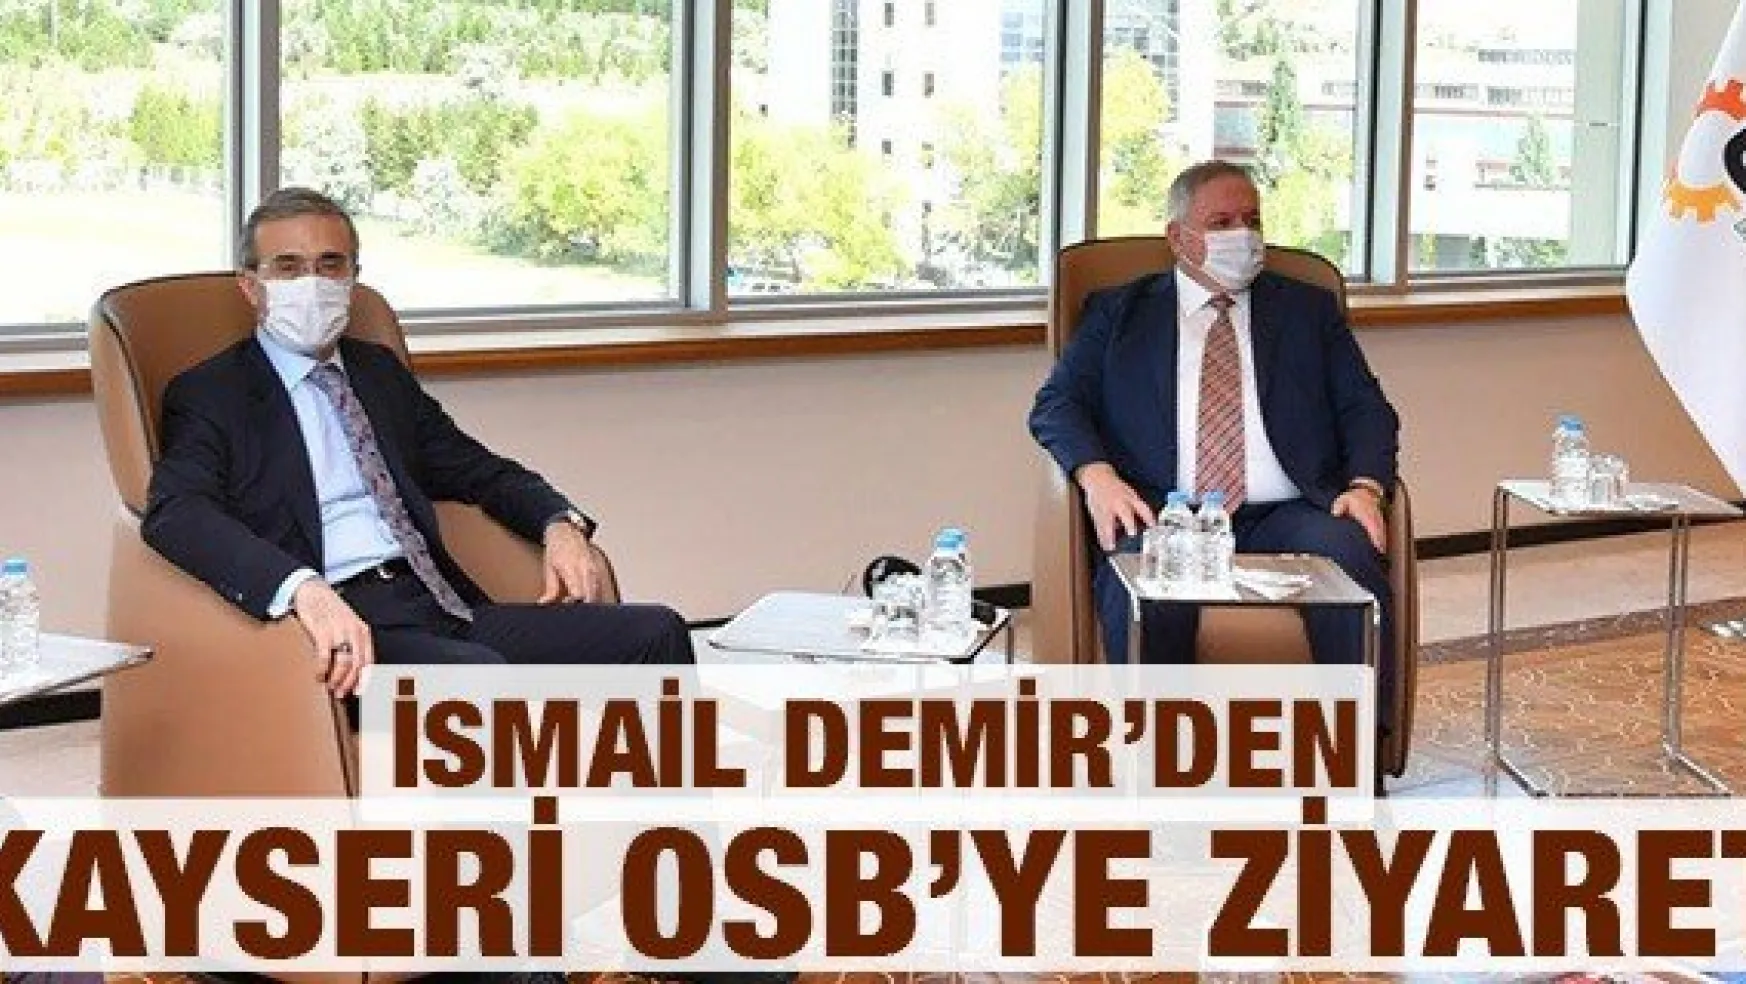 Savunma Sanayii Başkanı Prof. Dr. İsmail Demir'den Kayseri OSB'ye ziyaret